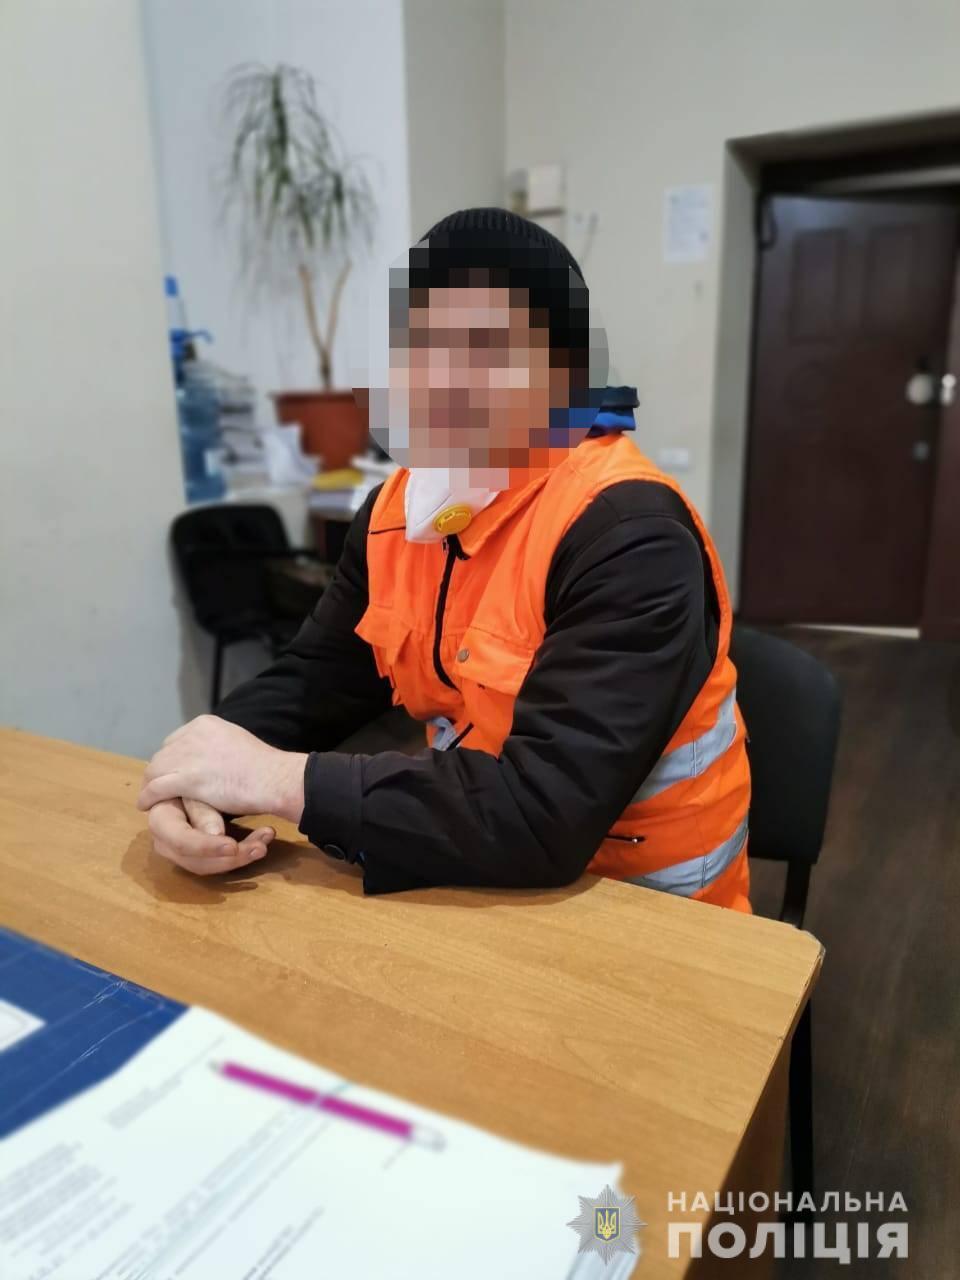 Поліцейські затримали правопорушника, який надав неправдиве повідомлення про замінування п’яти будівель комунальних підприємств Одеси